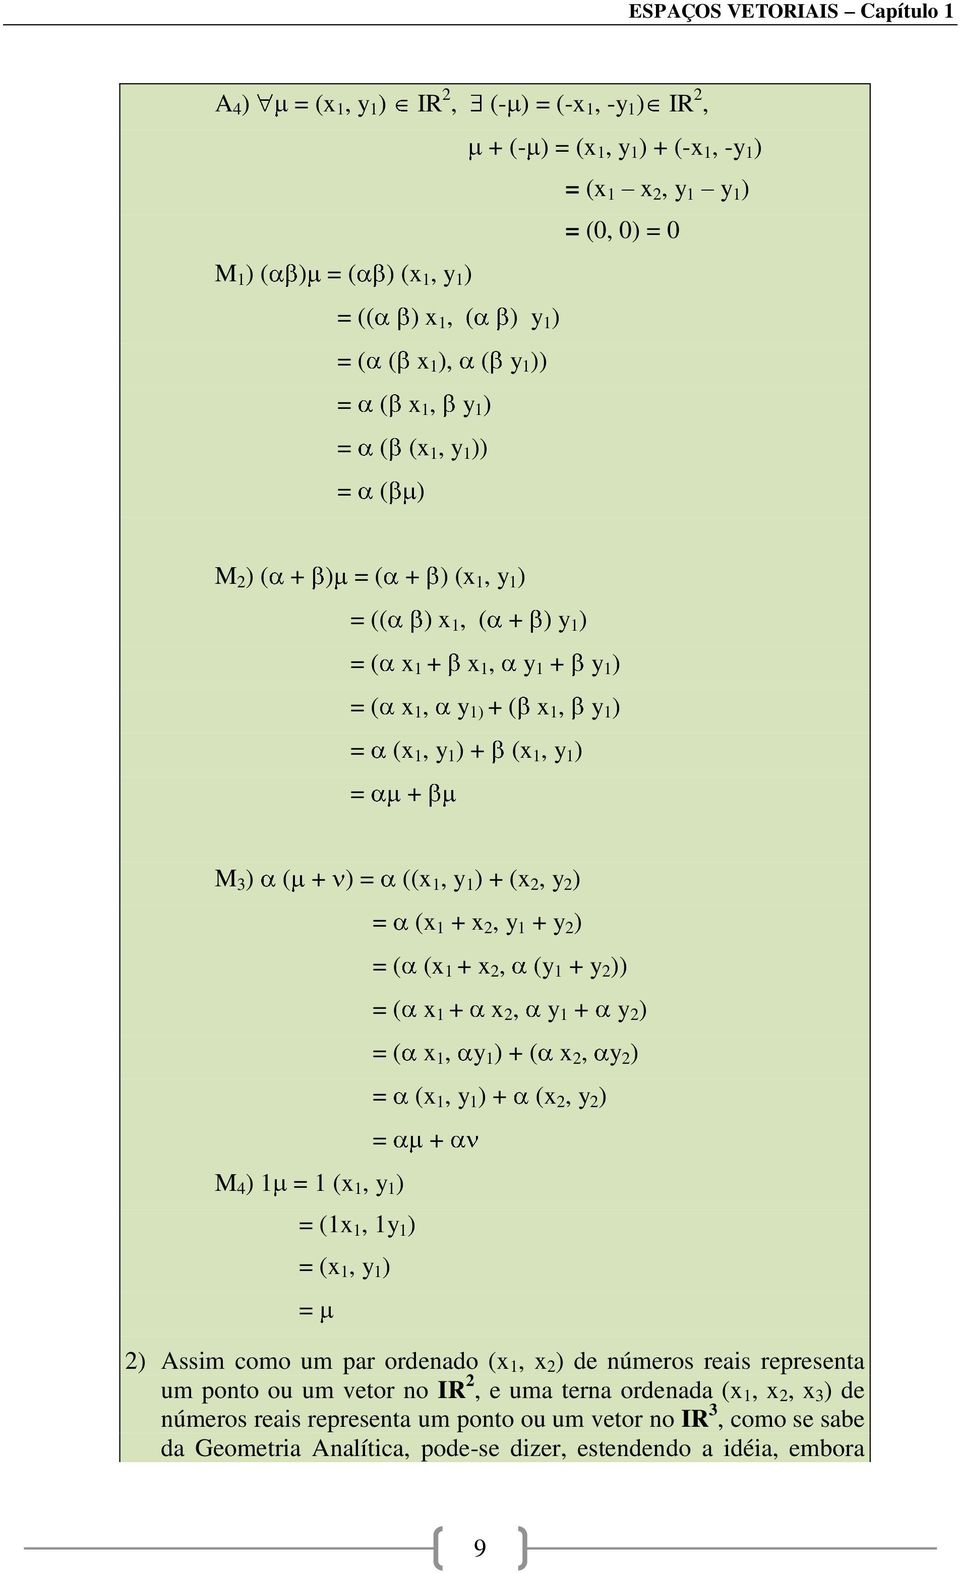 1 ) = + M 3 ) ( + ) = ((x 1, y 1 ) + (x 2, y 2 ) M 4 ) 1 = 1 (x 1, y 1 ) = (x 1 + x 2, y 1 + y 2 ) = ( (x 1 + x 2, (y 1 + y 2 )) = ( x 1 + x 2, y 1 + y 2 ) = ( x 1, y 1 ) + ( x 2, y 2 ) = (x 1, y 1 )